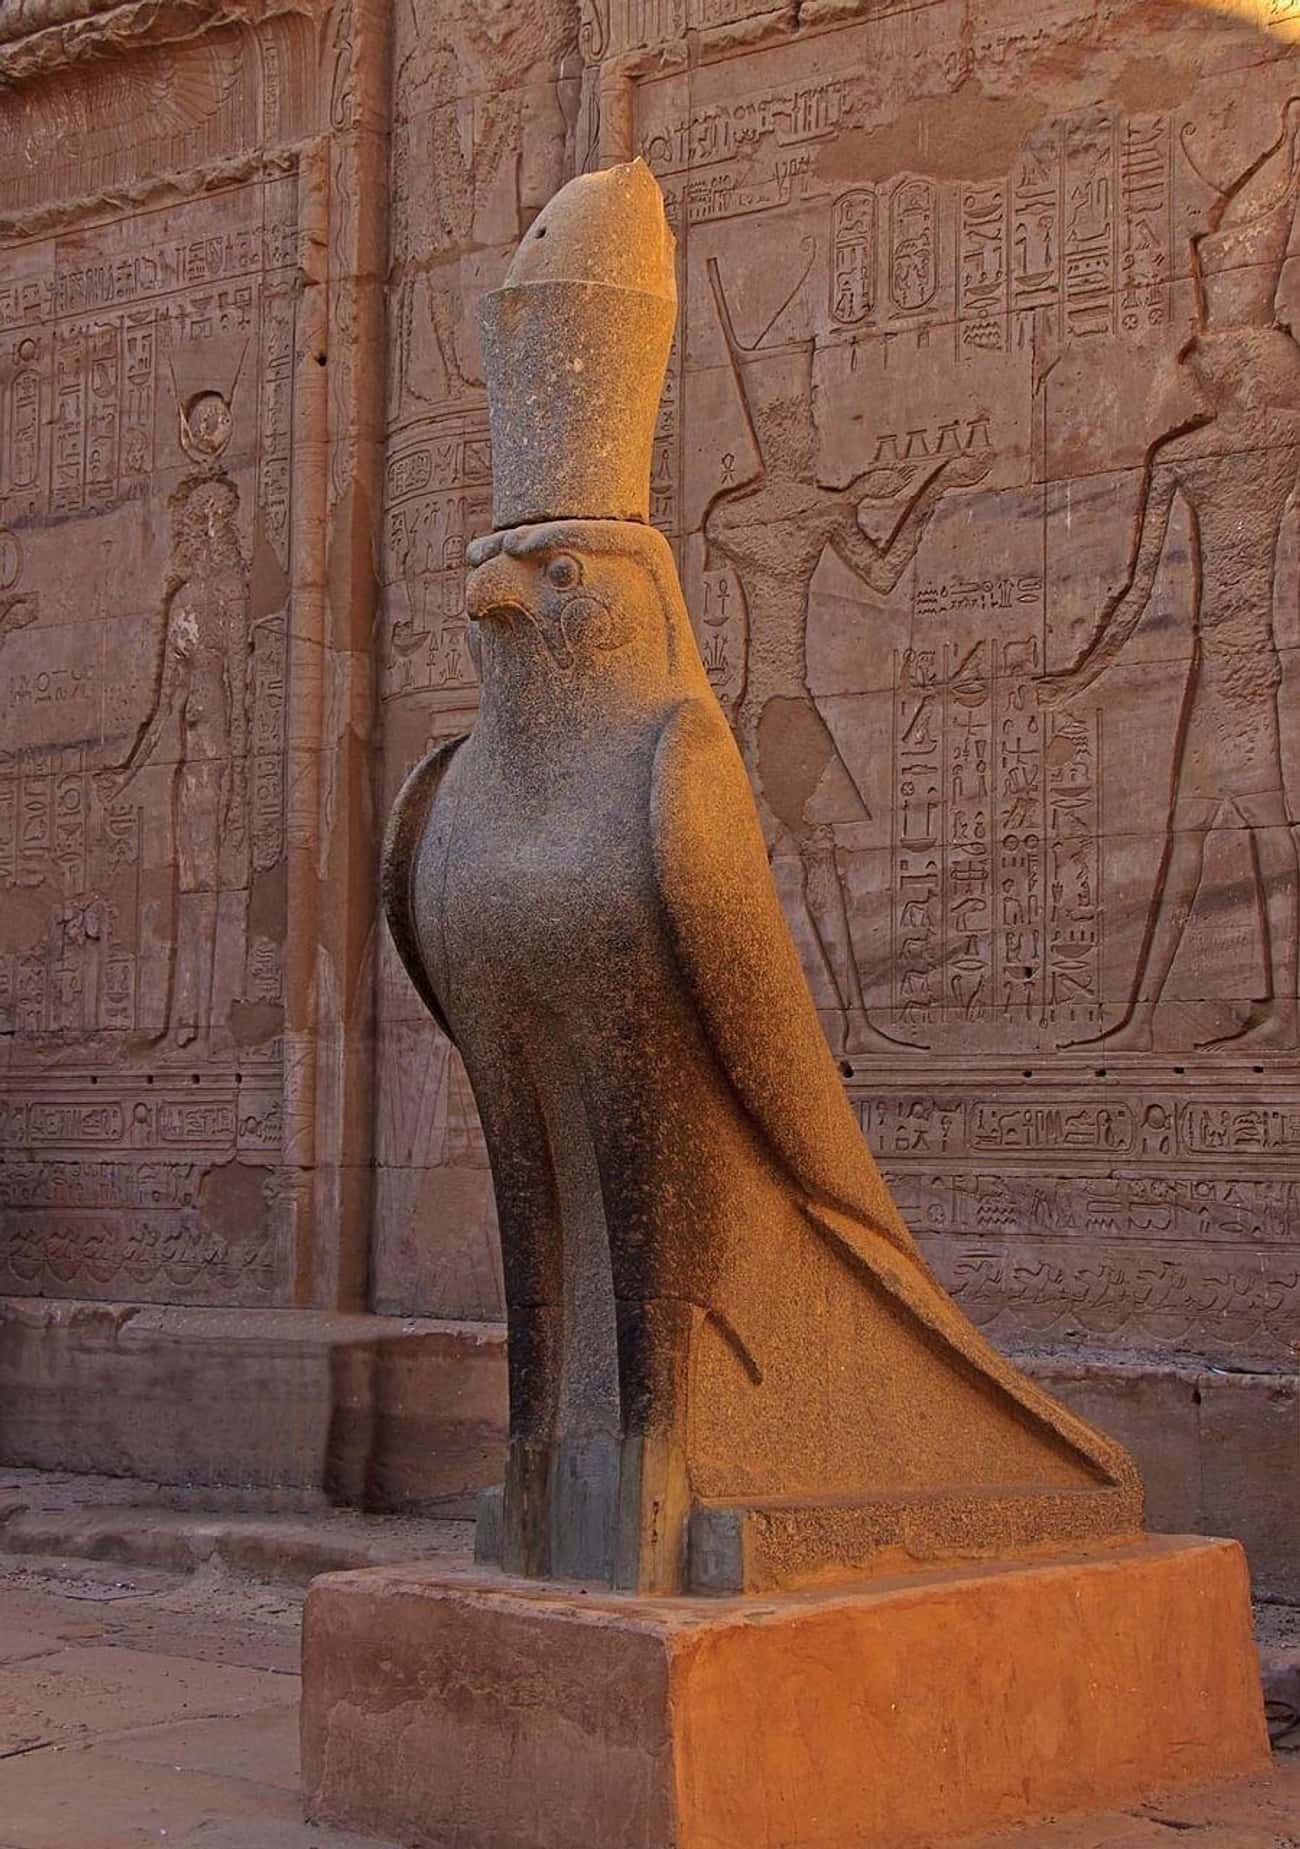 El trabajo de Babalon estaba destinado a iniciar el Eón de Horus